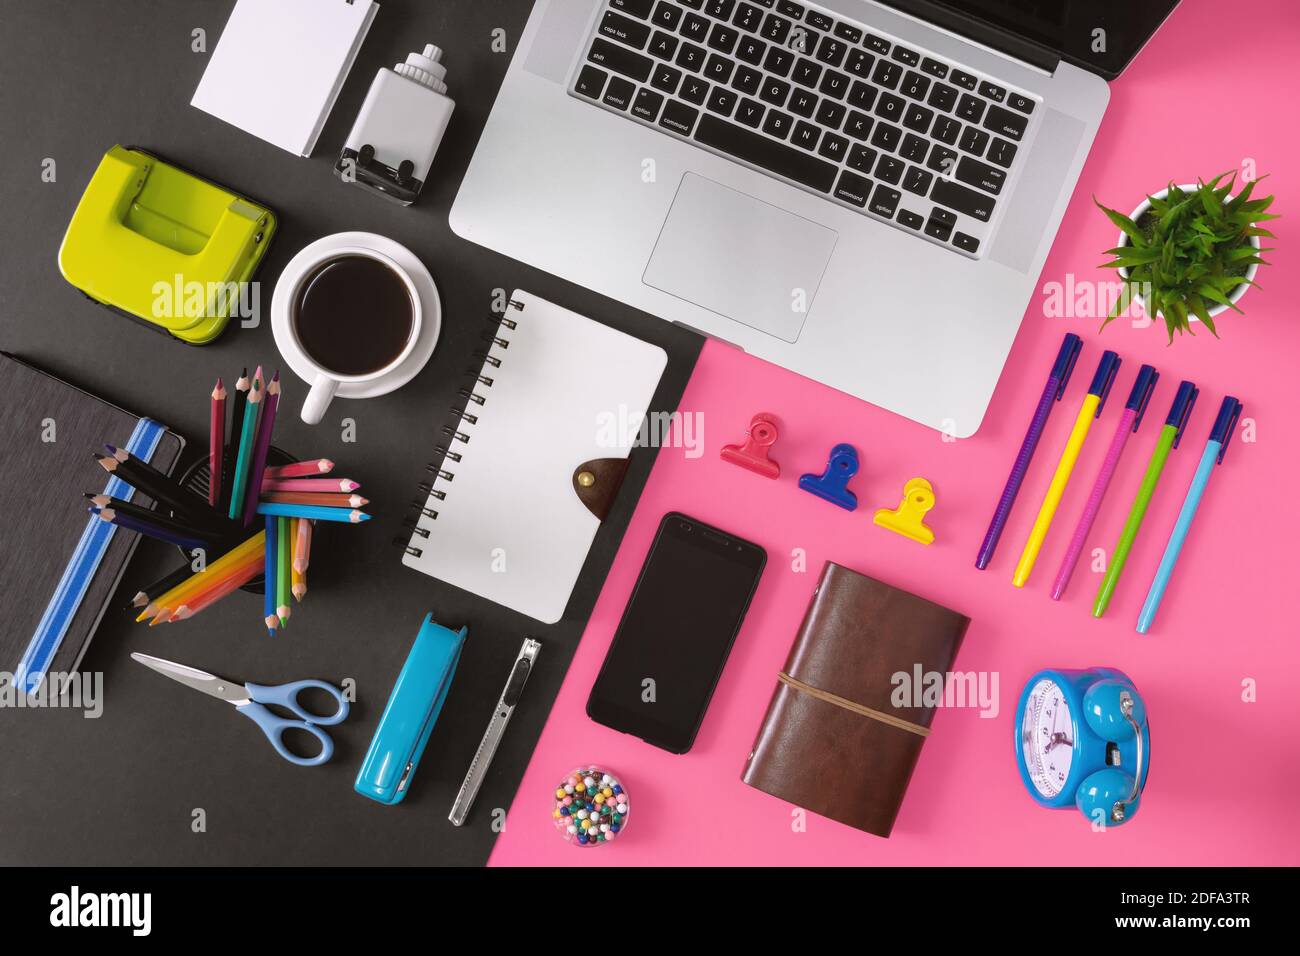 Các vật dụng văn phòng phẩm, laptop và một tách cà phê ngon lành nằm trên nền đen và hồng sẽ đem đến cho bạn cảm giác tươi mới và phấn khích trong công việc. Hãy xem hình ảnh và cảm nhận sức mạnh tinh thần.